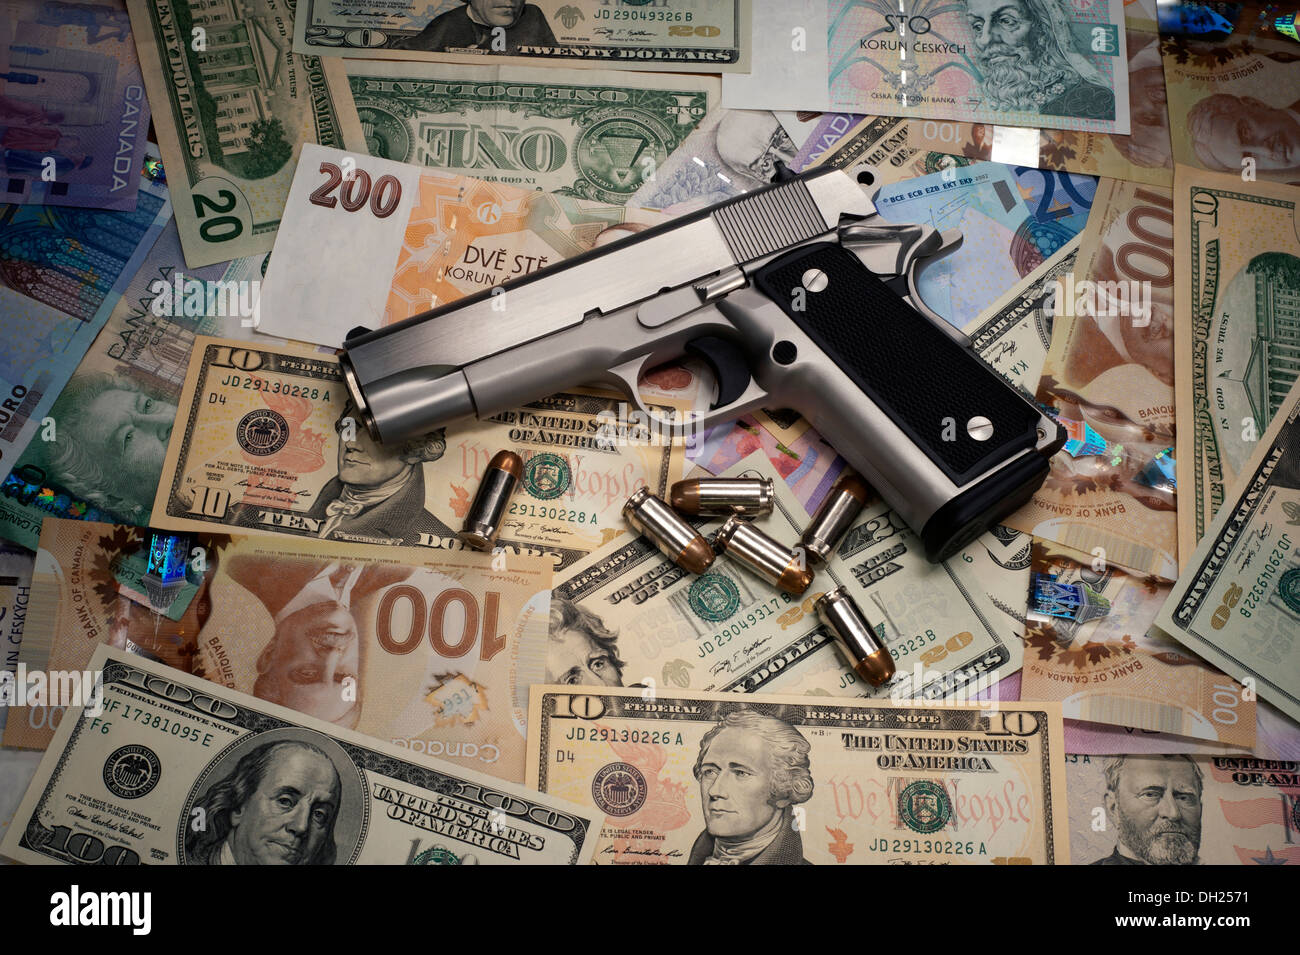 - Pistola pistola y dinero. Foto de stock